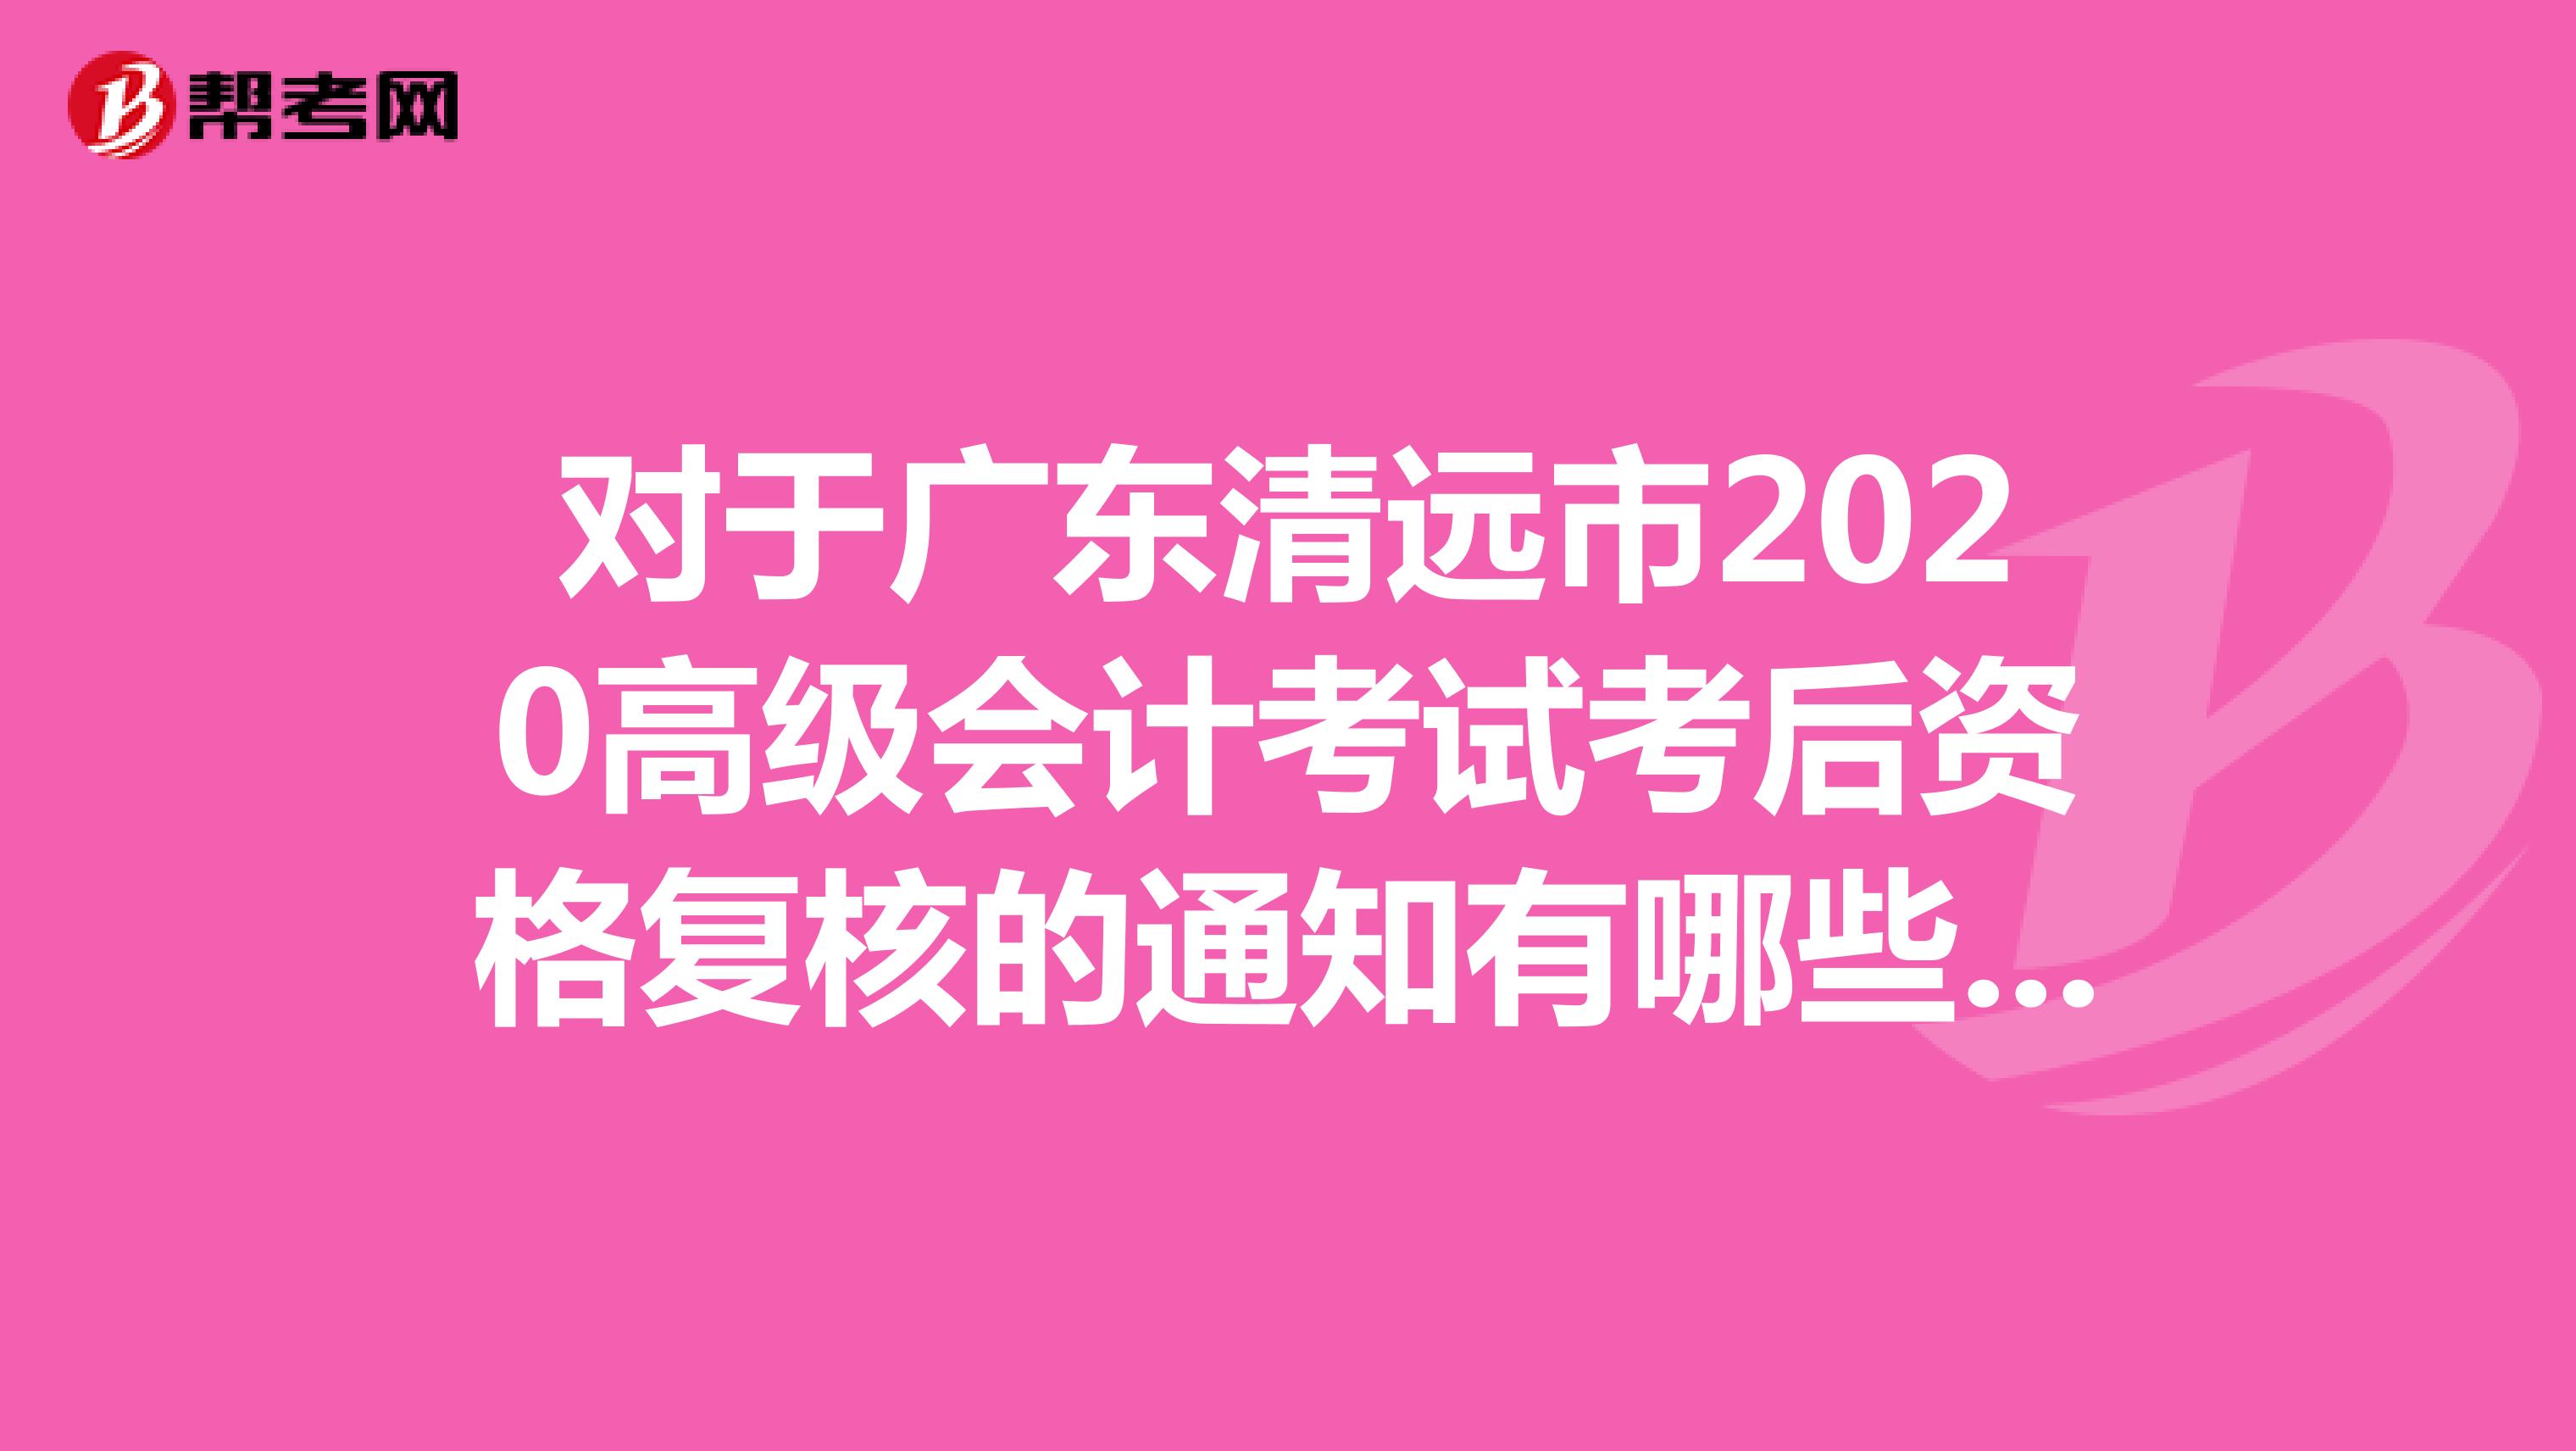 对于广东清远市2020高级会计考试考后资格复核的通知有哪些呢？